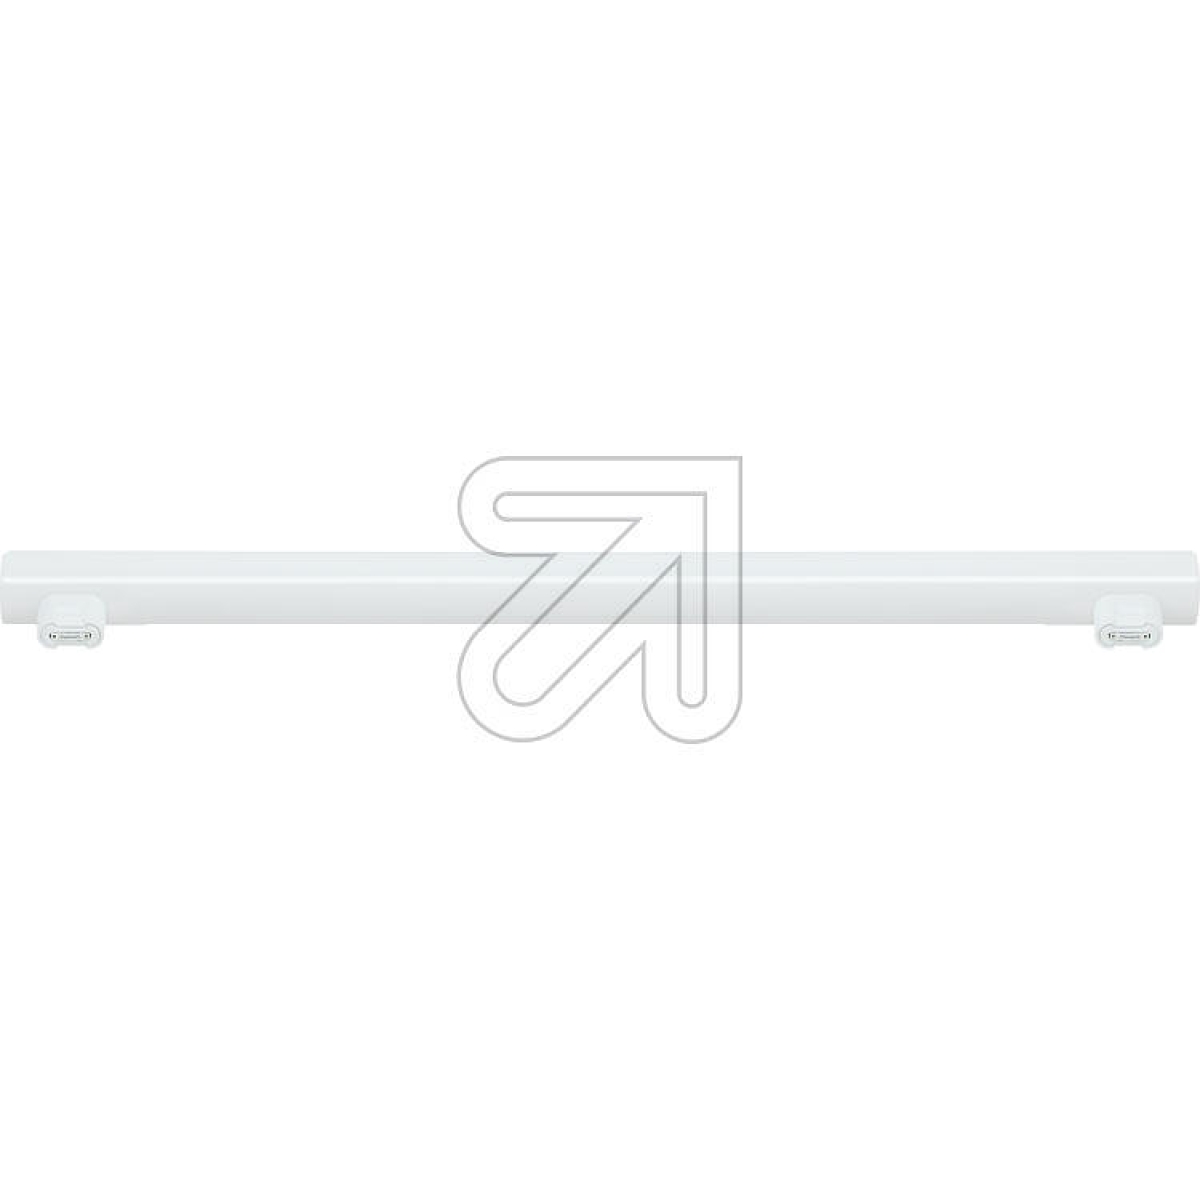 EGBLED Linienlampe S14s L500mm 7,5W 700lm 2700KArtikel-Nr: 539970